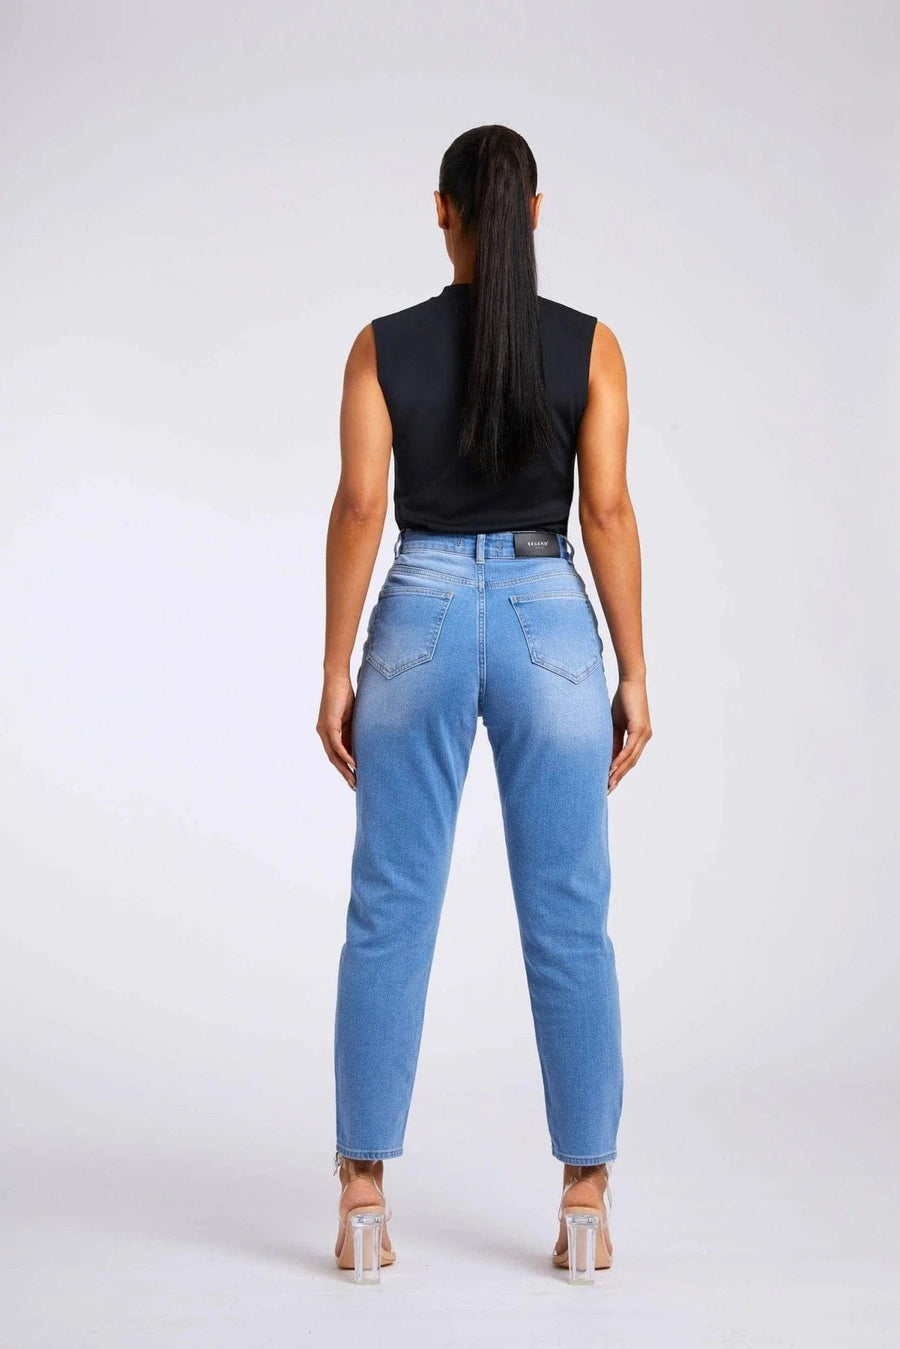 Legend London Women's Jeans MOM JEANS - VINTAGE BLUE WASH